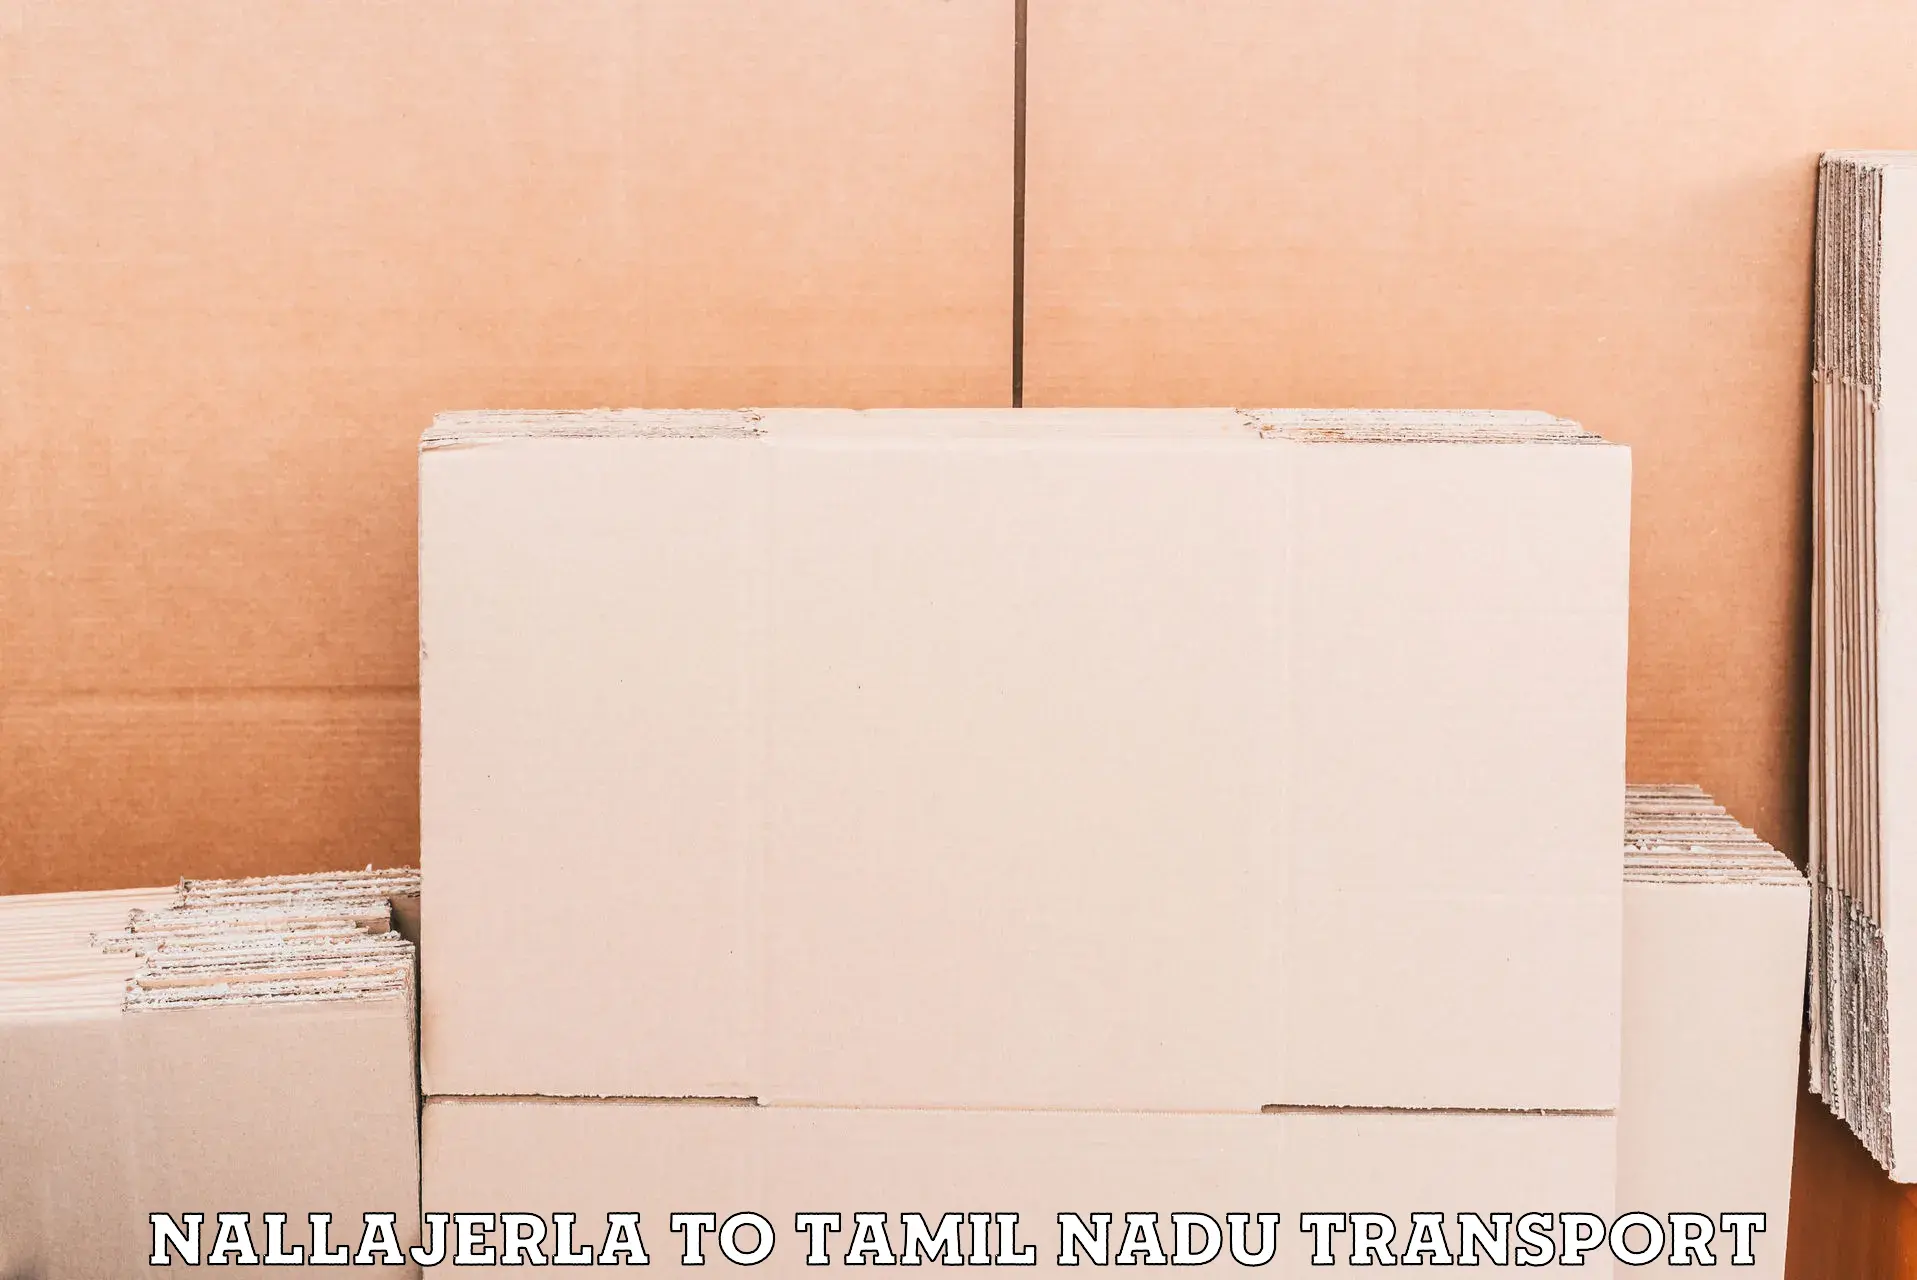 Commercial transport service Nallajerla to Ottapidaram